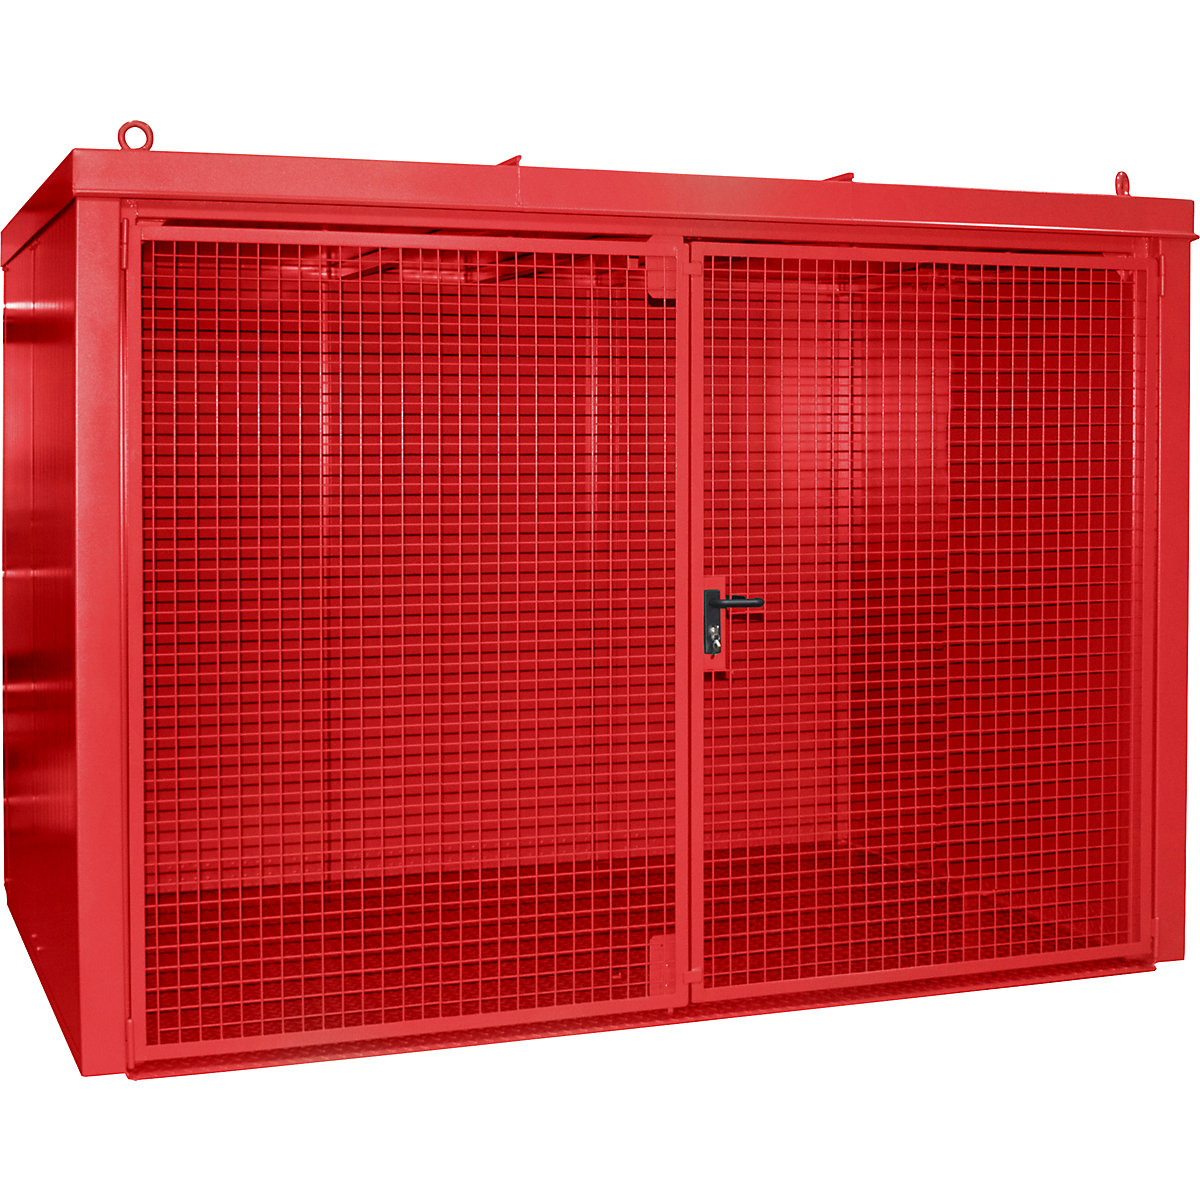 Gázpalacktároló konténer, tűzálló – eurokraft pro, 60 db, egyenként 230 mm átmérőjű palackhoz, piros-3